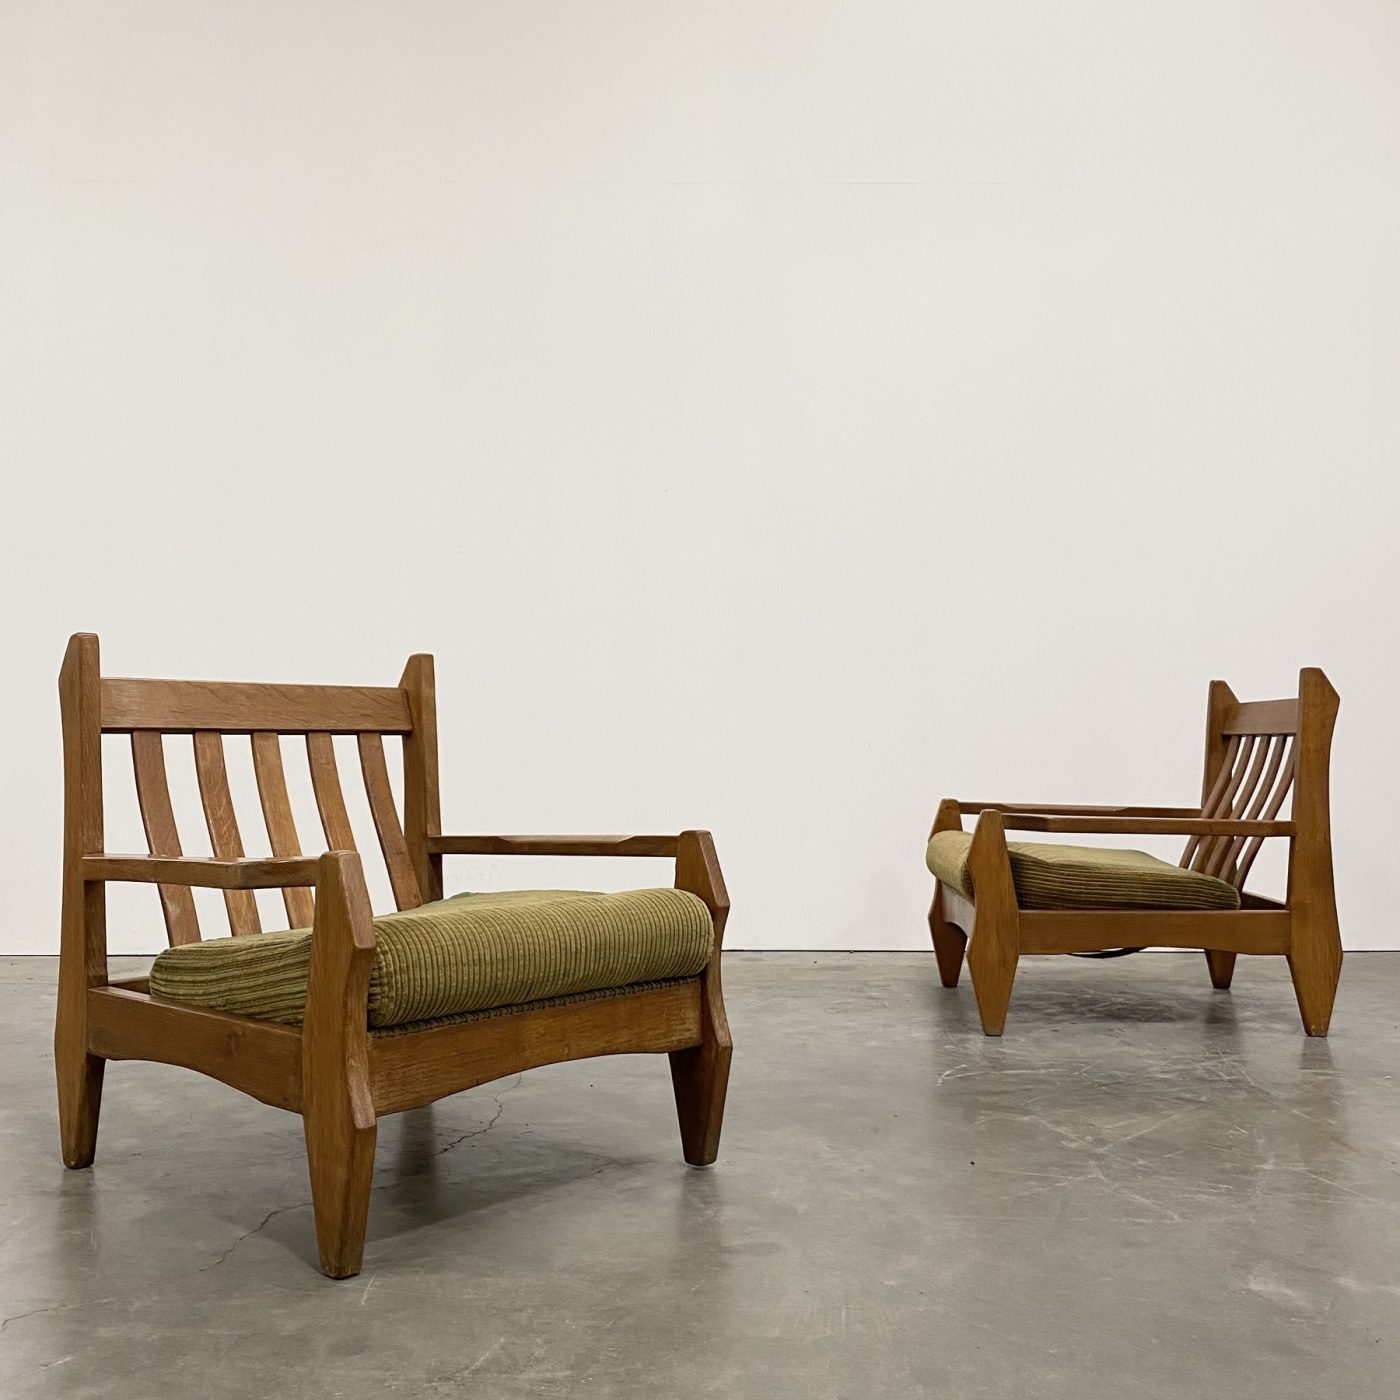 objet-vagabond-oak-armchairs0003